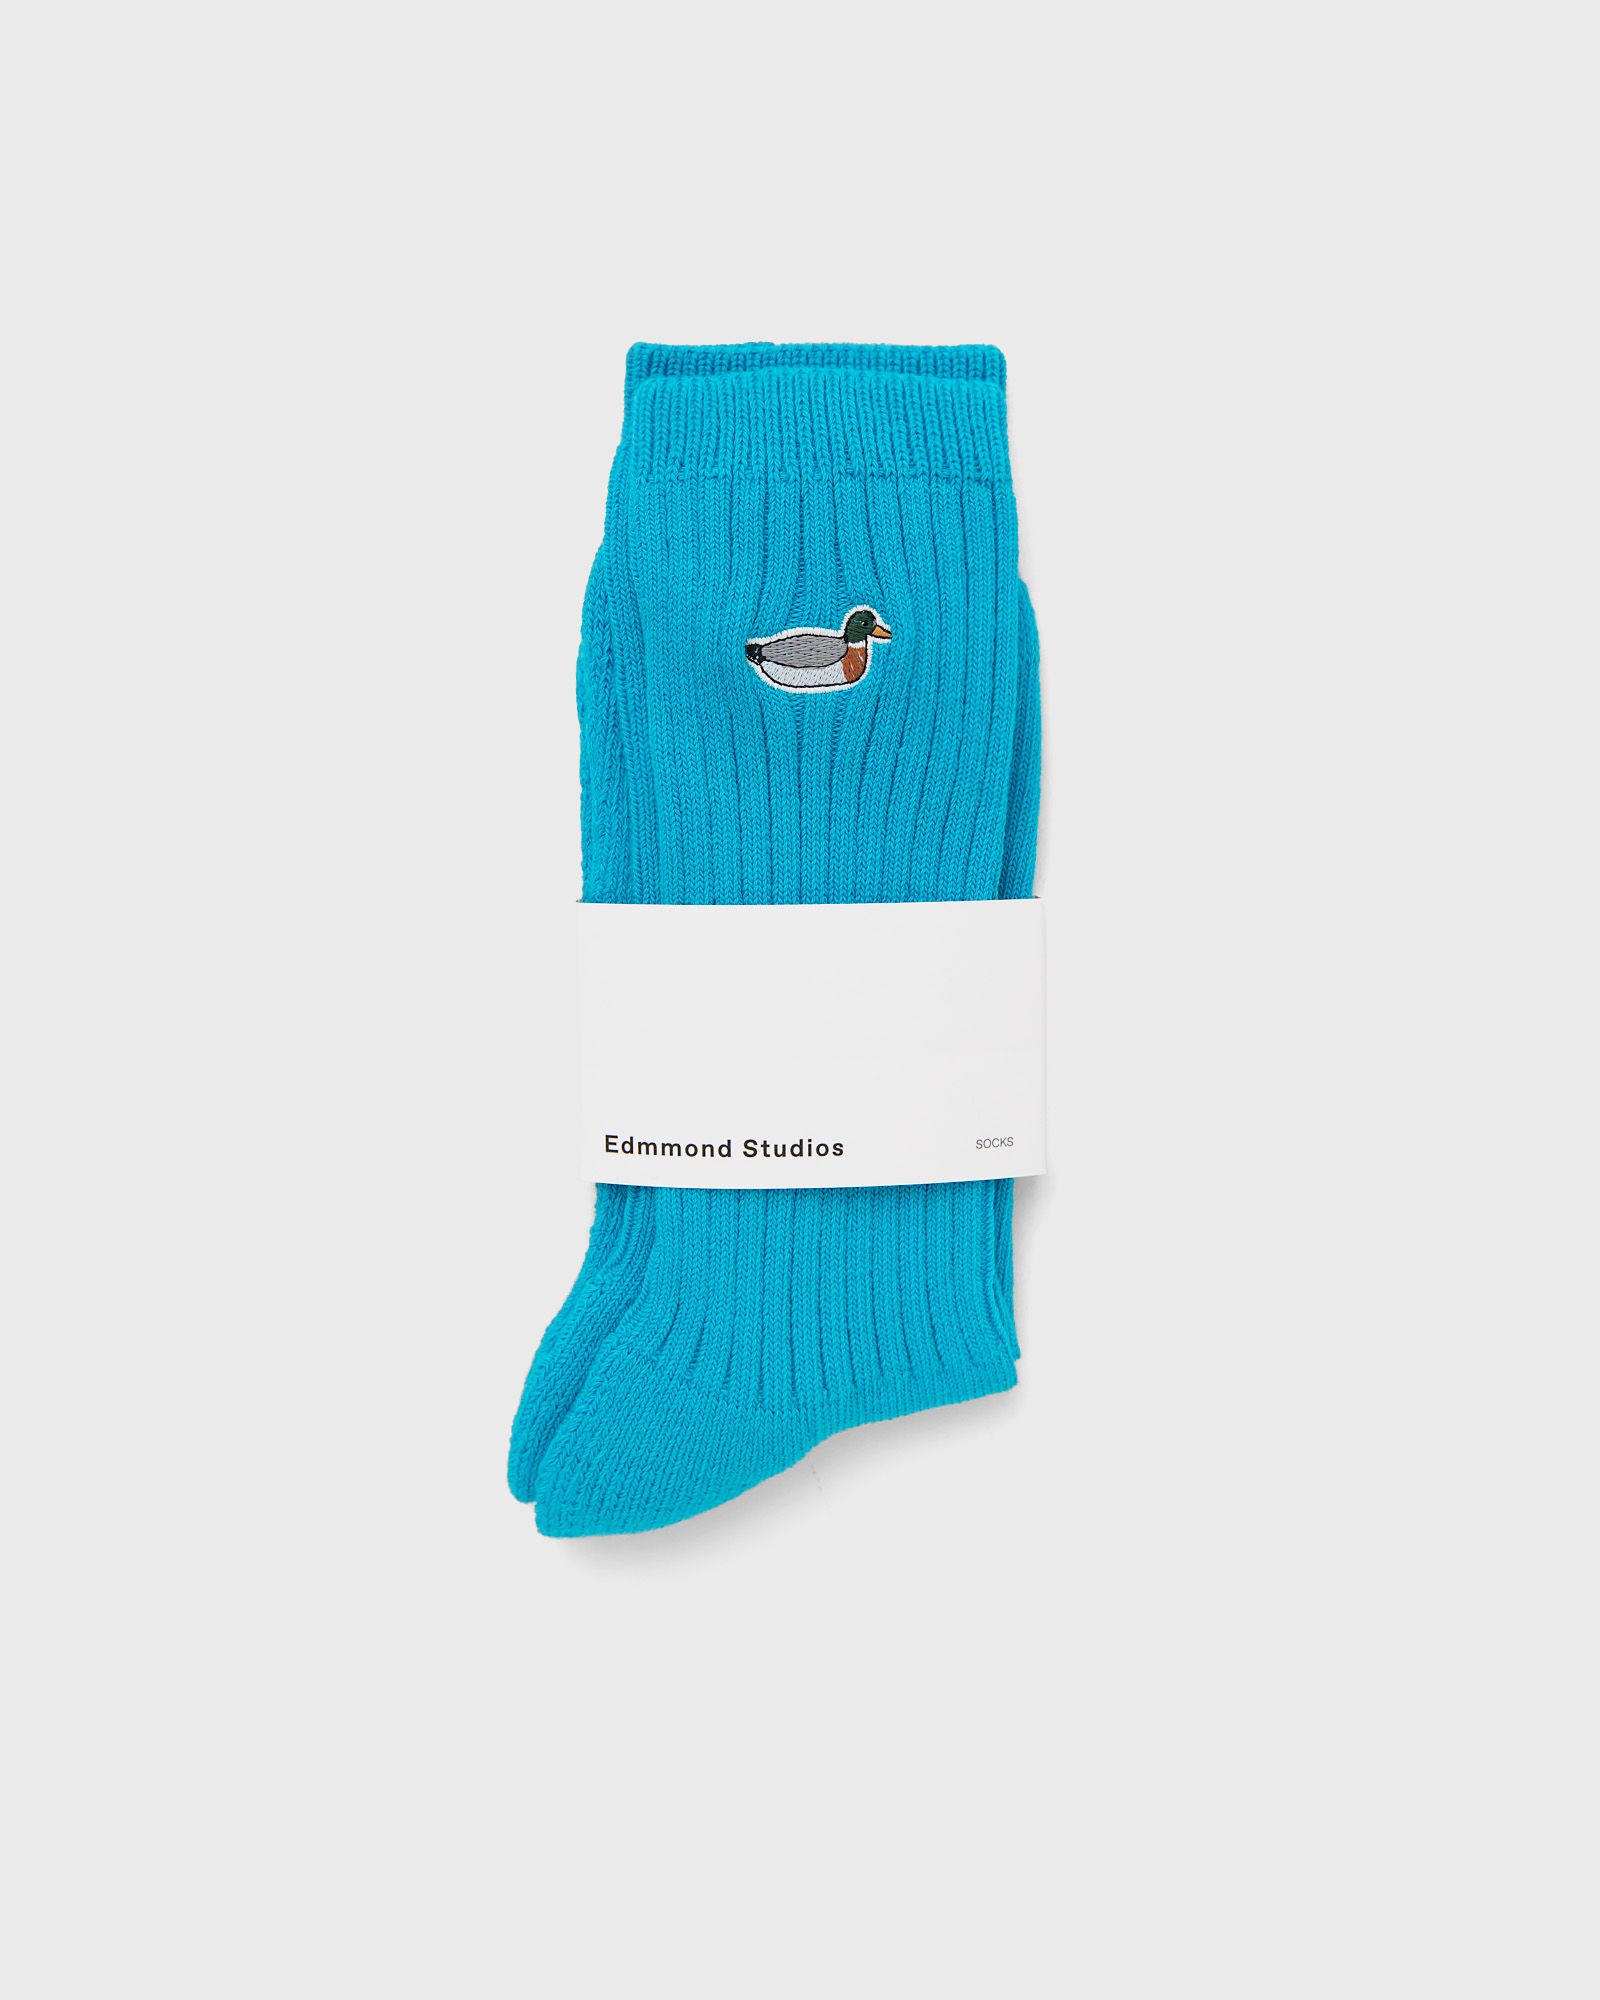 Edmmond Studios - duck socks men socks blue in größe:one size